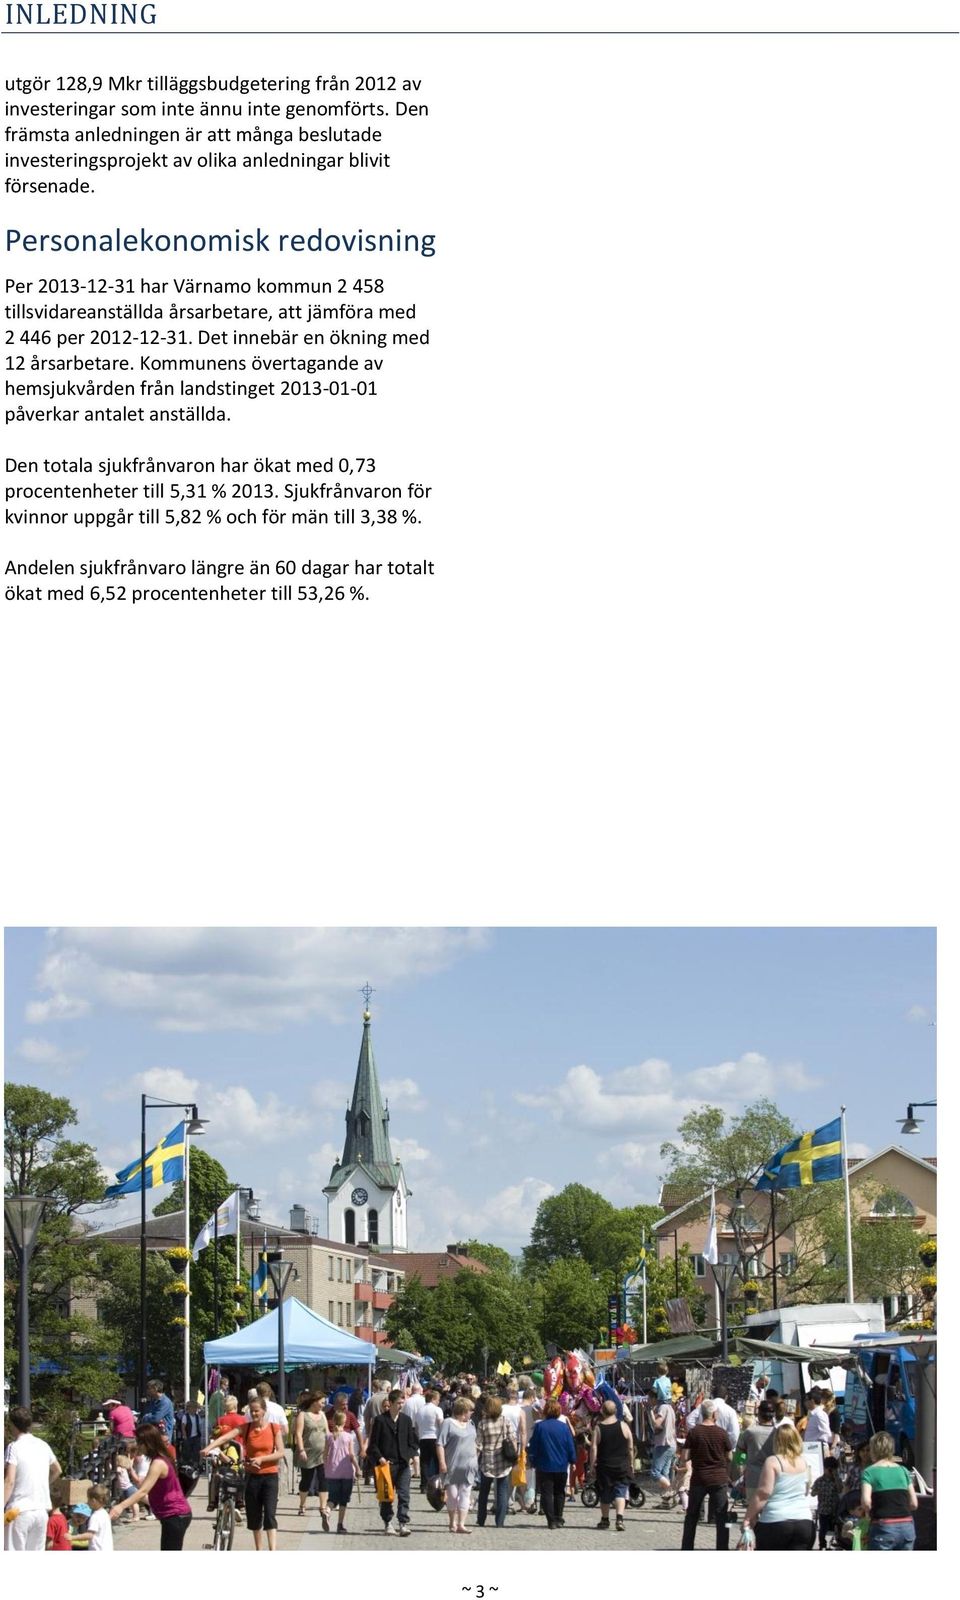 Personalekonomisk redovisning Per 2013-12-31 har Värnamo kommun 2 458 tillsvidareanställda årsarbetare, att jämföra med 2 446 per 2012-12-31. Det innebär en ökning med 12 årsarbetare.